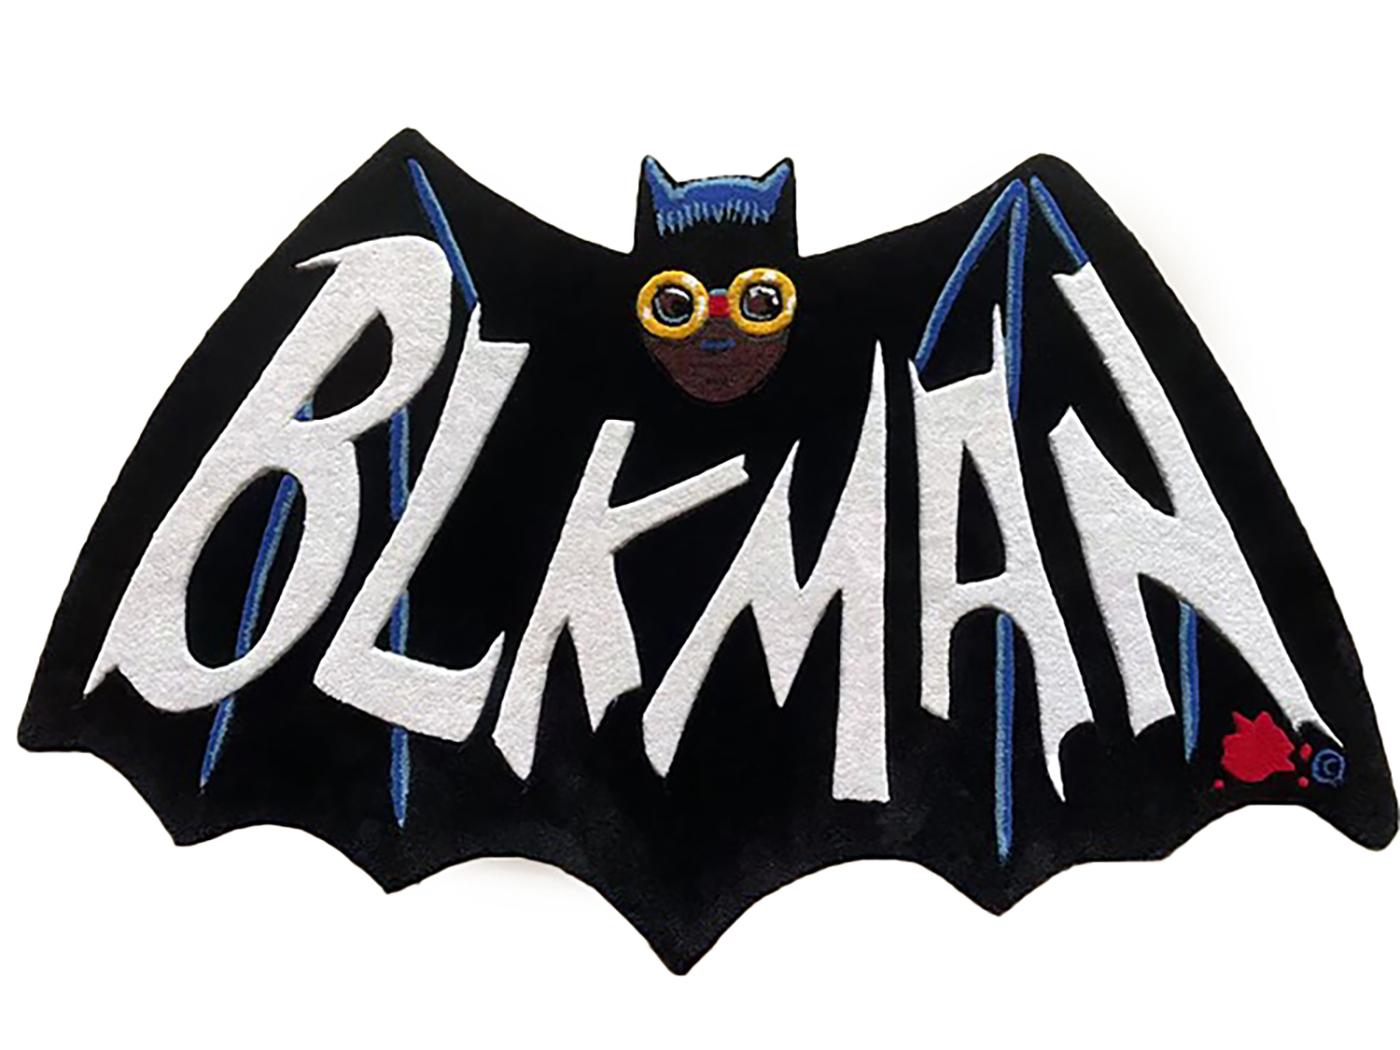 Hebru Brantley Calling All Cars rug (Hebru Brantley Blk Man):
Hebru Brantleys brillante Darstellung von Batman ist ein wunderschönes, ästhetisch ansprechendes Teppichkunstwerk, das in jeder Umgebung zur Geltung kommt. Aus einer limitierten Auflage